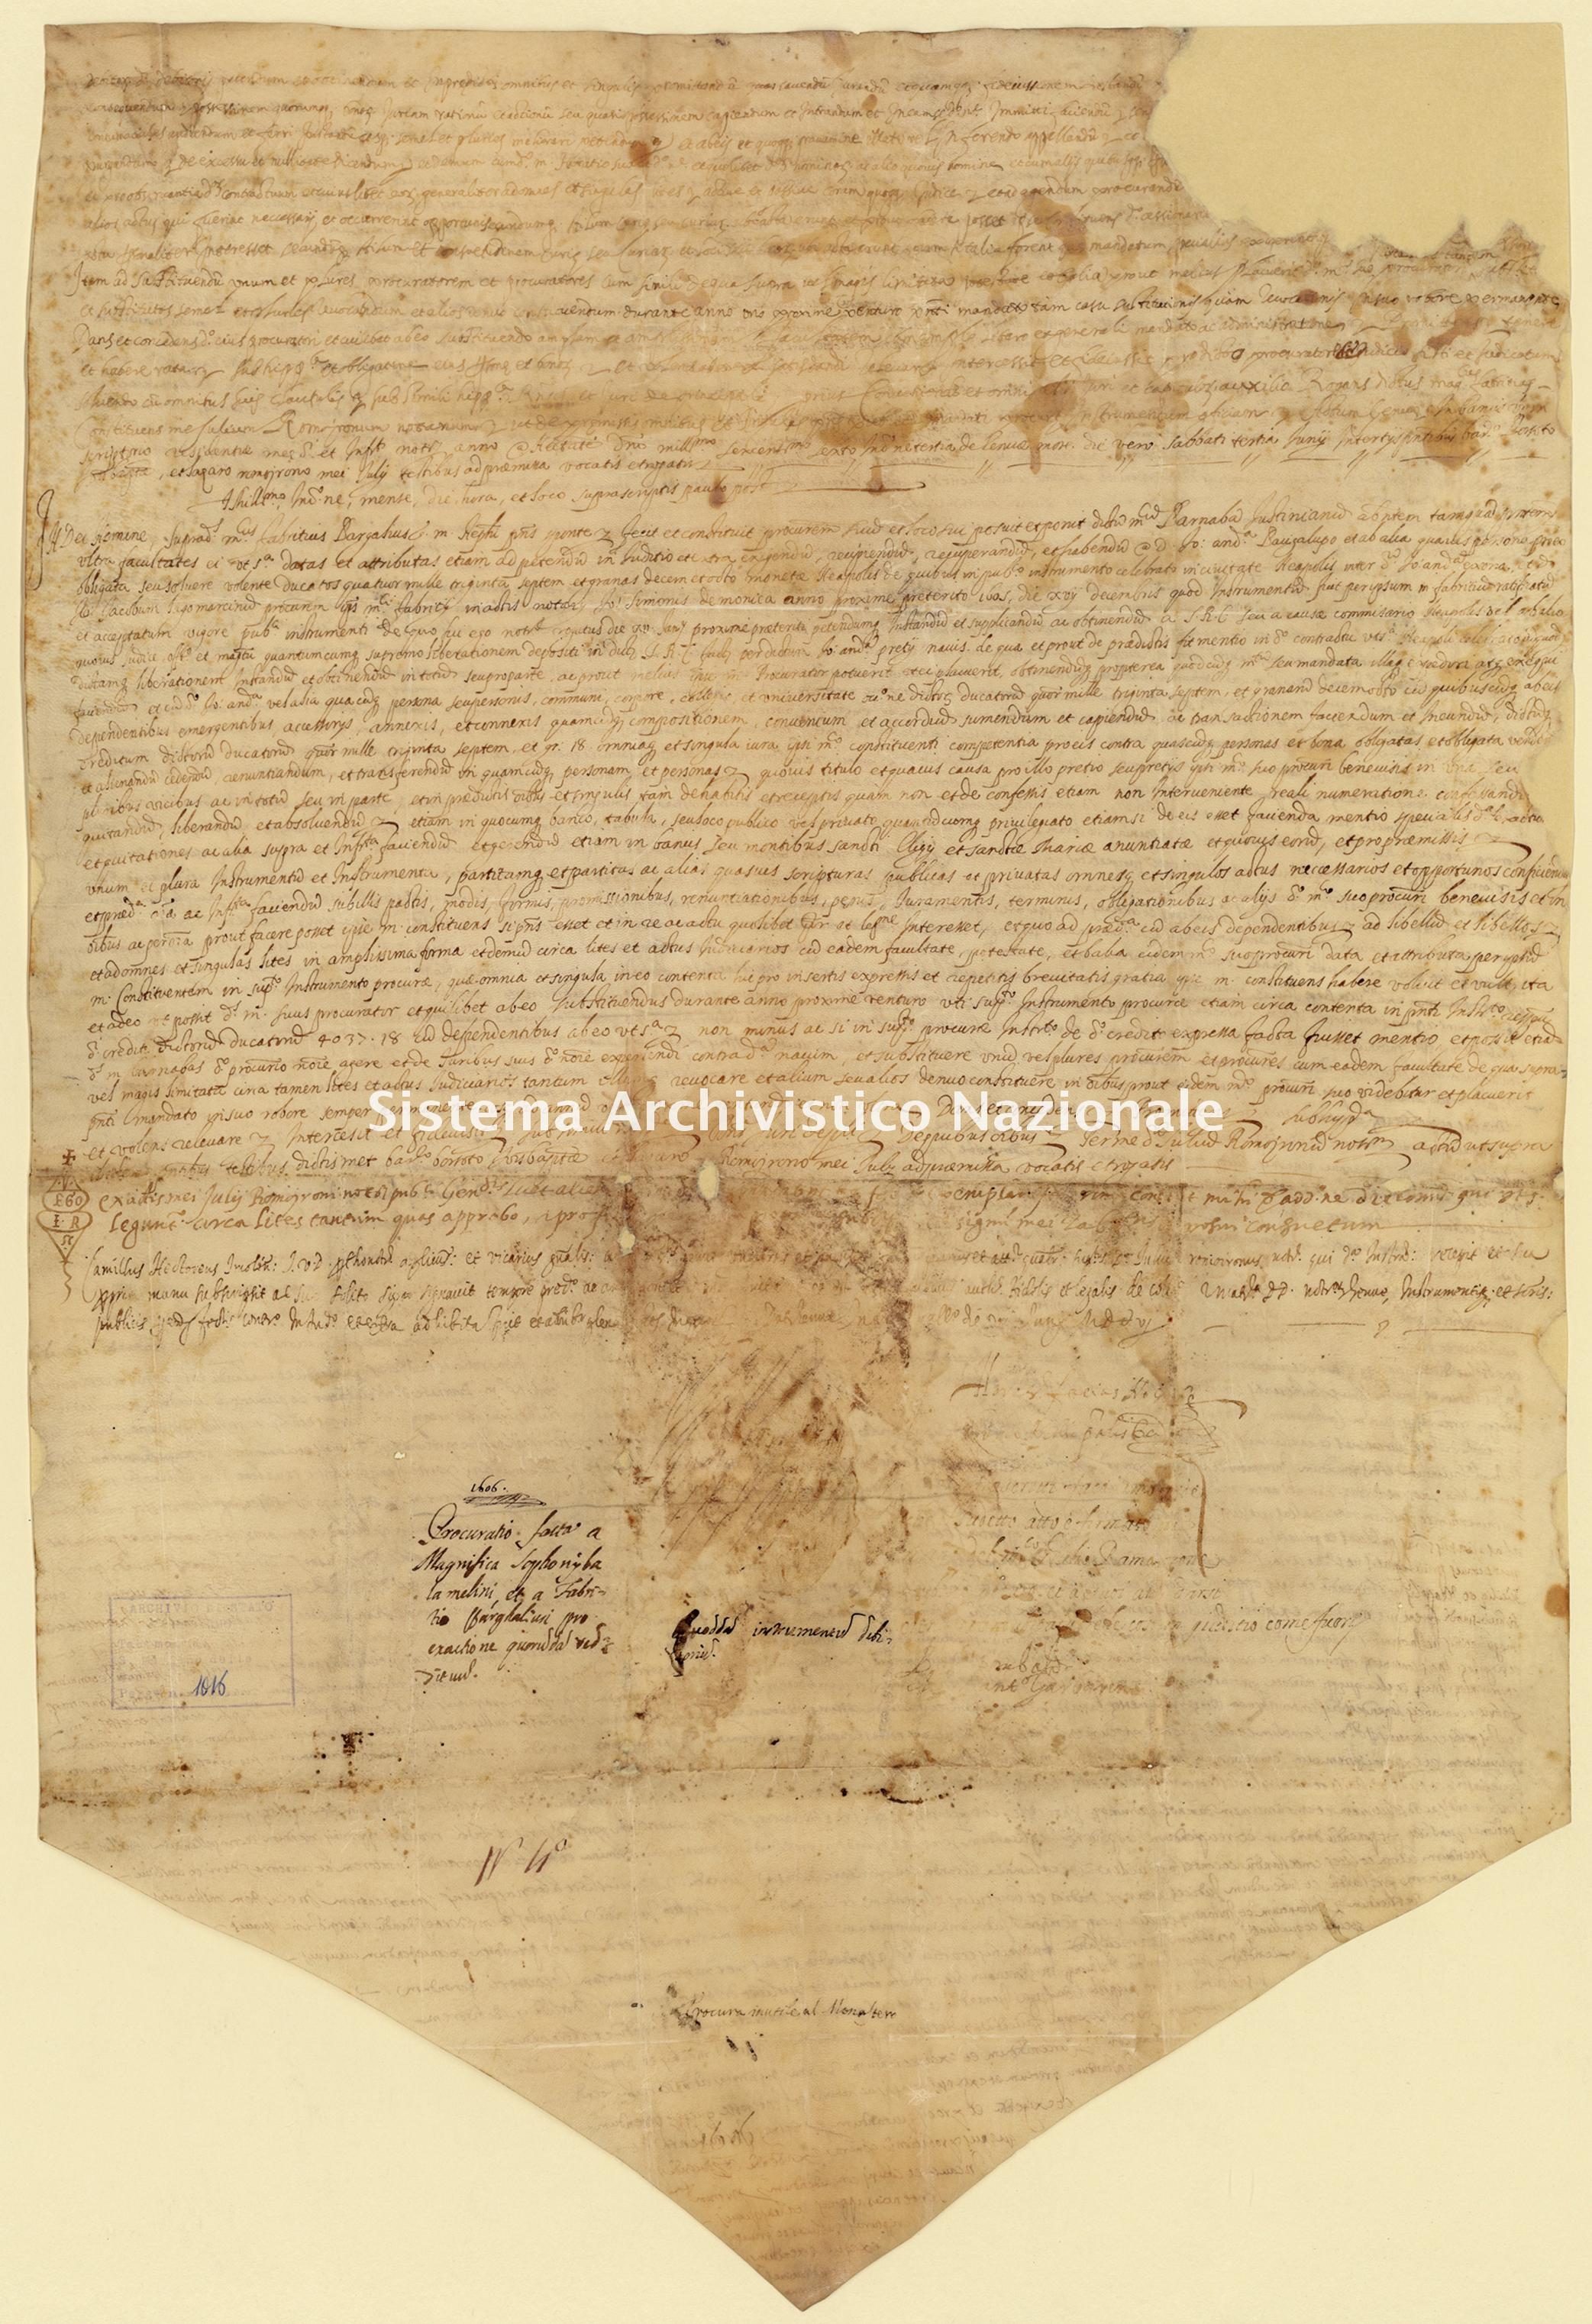 Archivio di Stato di Palermo, Diplomatico, Tabulario del monastero di San Martino delle Scale, Pergamena TSMS 1016